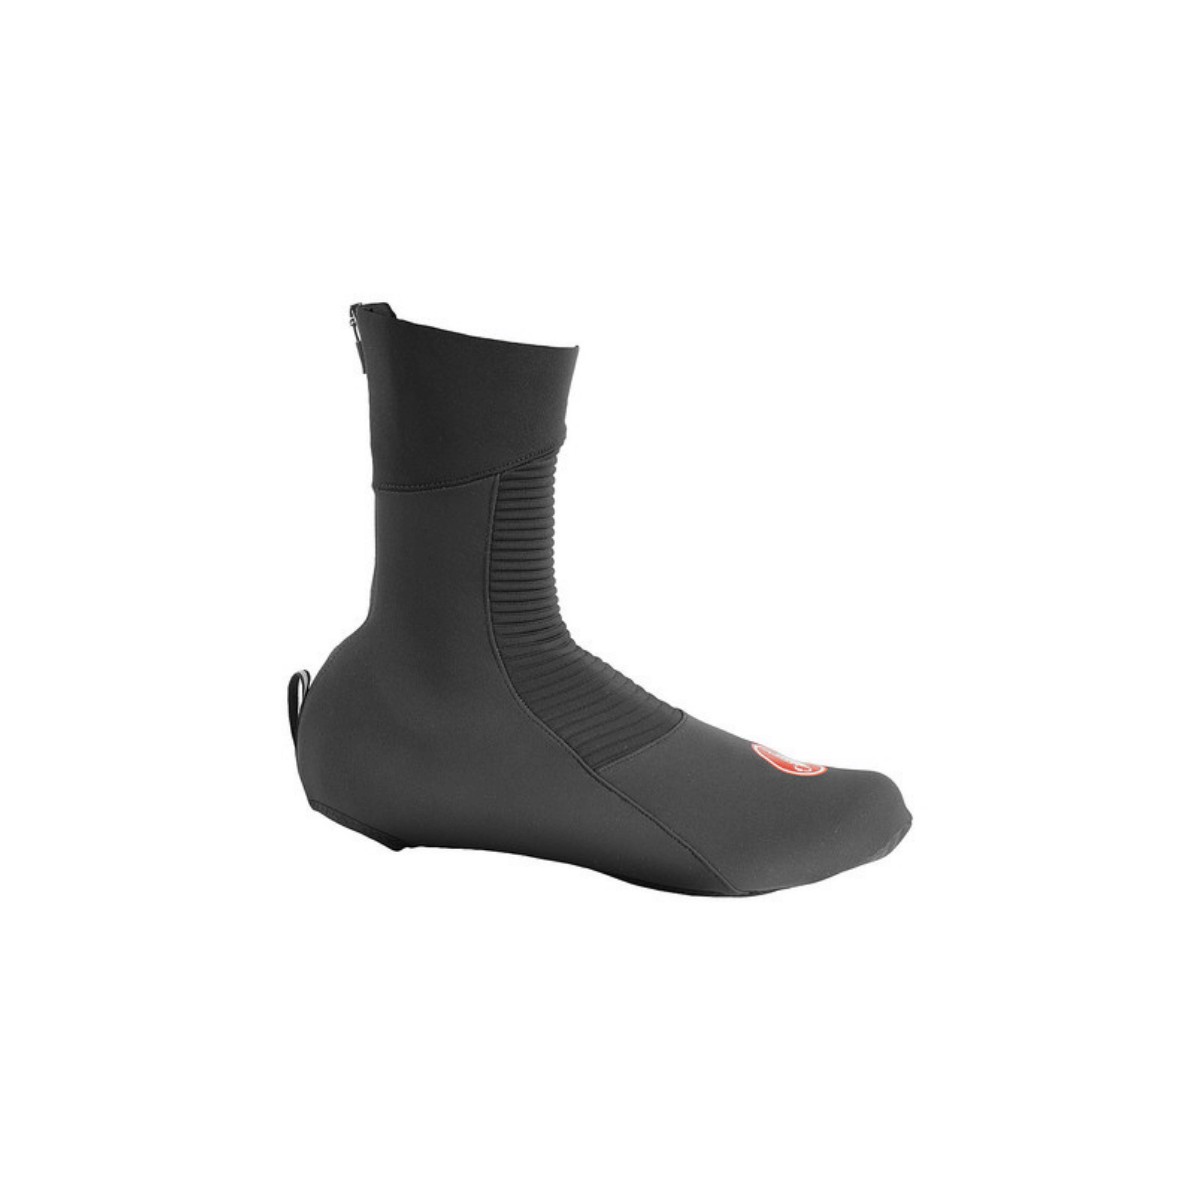 Castelli Entrata Black Shoe Covers, Size XL